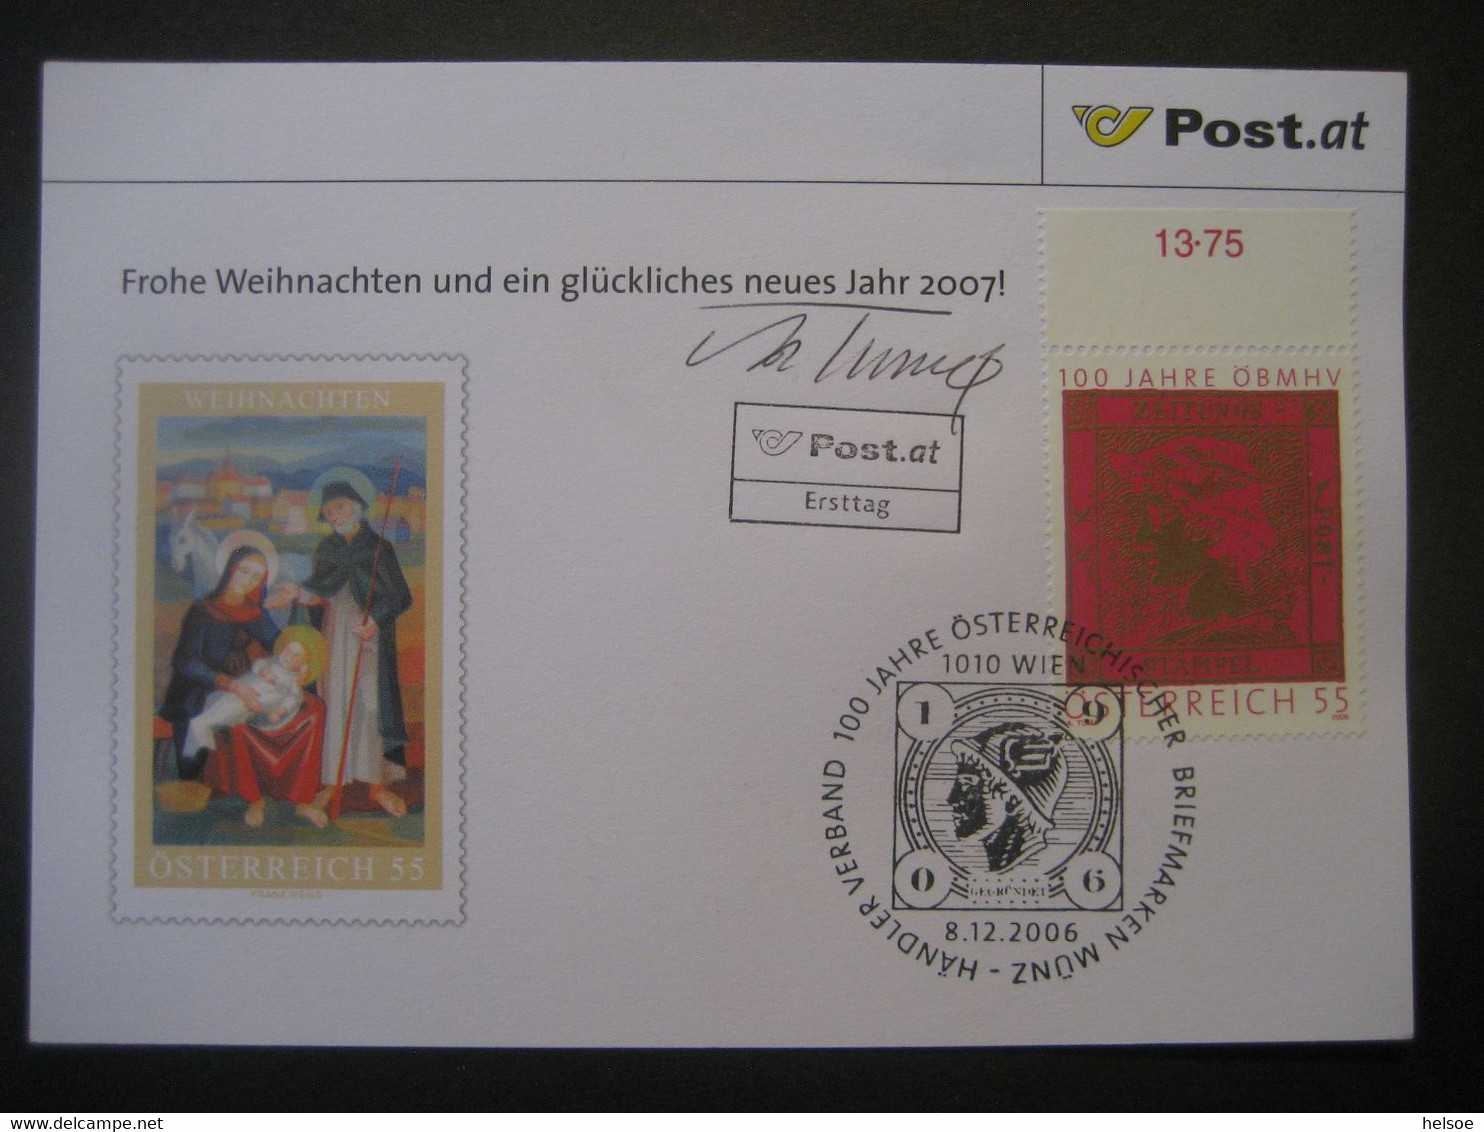 Osterreich- Advent 100 Jahre ÖBMSV, FDC Mit Autogramm Von Adolf Tuma - Cartas & Documentos